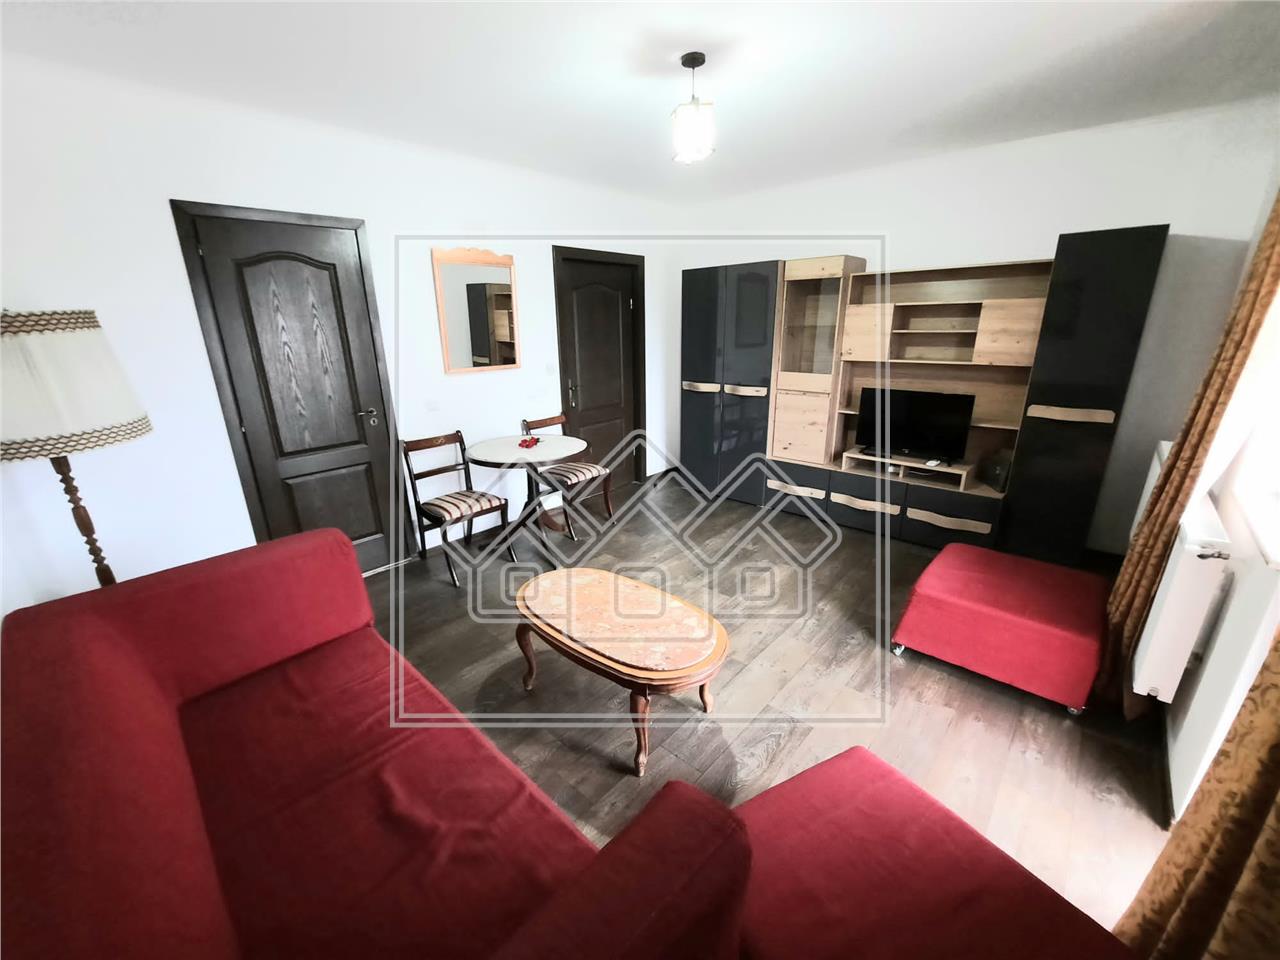 Apartament de inchiriat in Alba Iulia - 2 camere - etaj 1/3